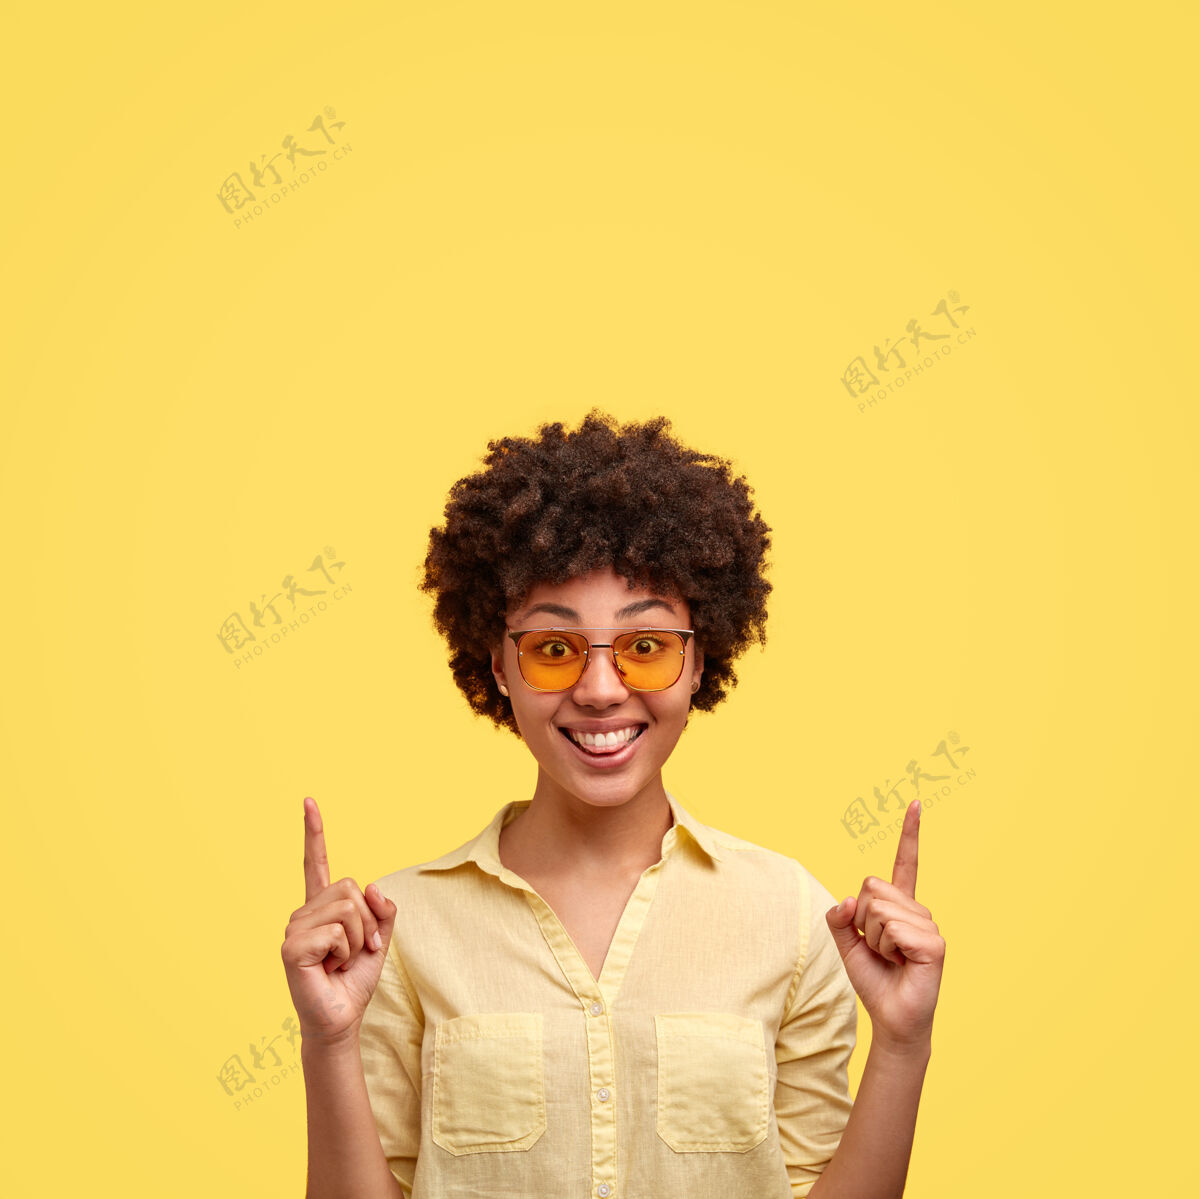 满意时尚黑人女性室内照有非洲式发型 穿着时髦的墨镜 衬衫与墙壁同色 正面微笑 向上表示头顶上方的自由空间用这个做广告肖像点高兴